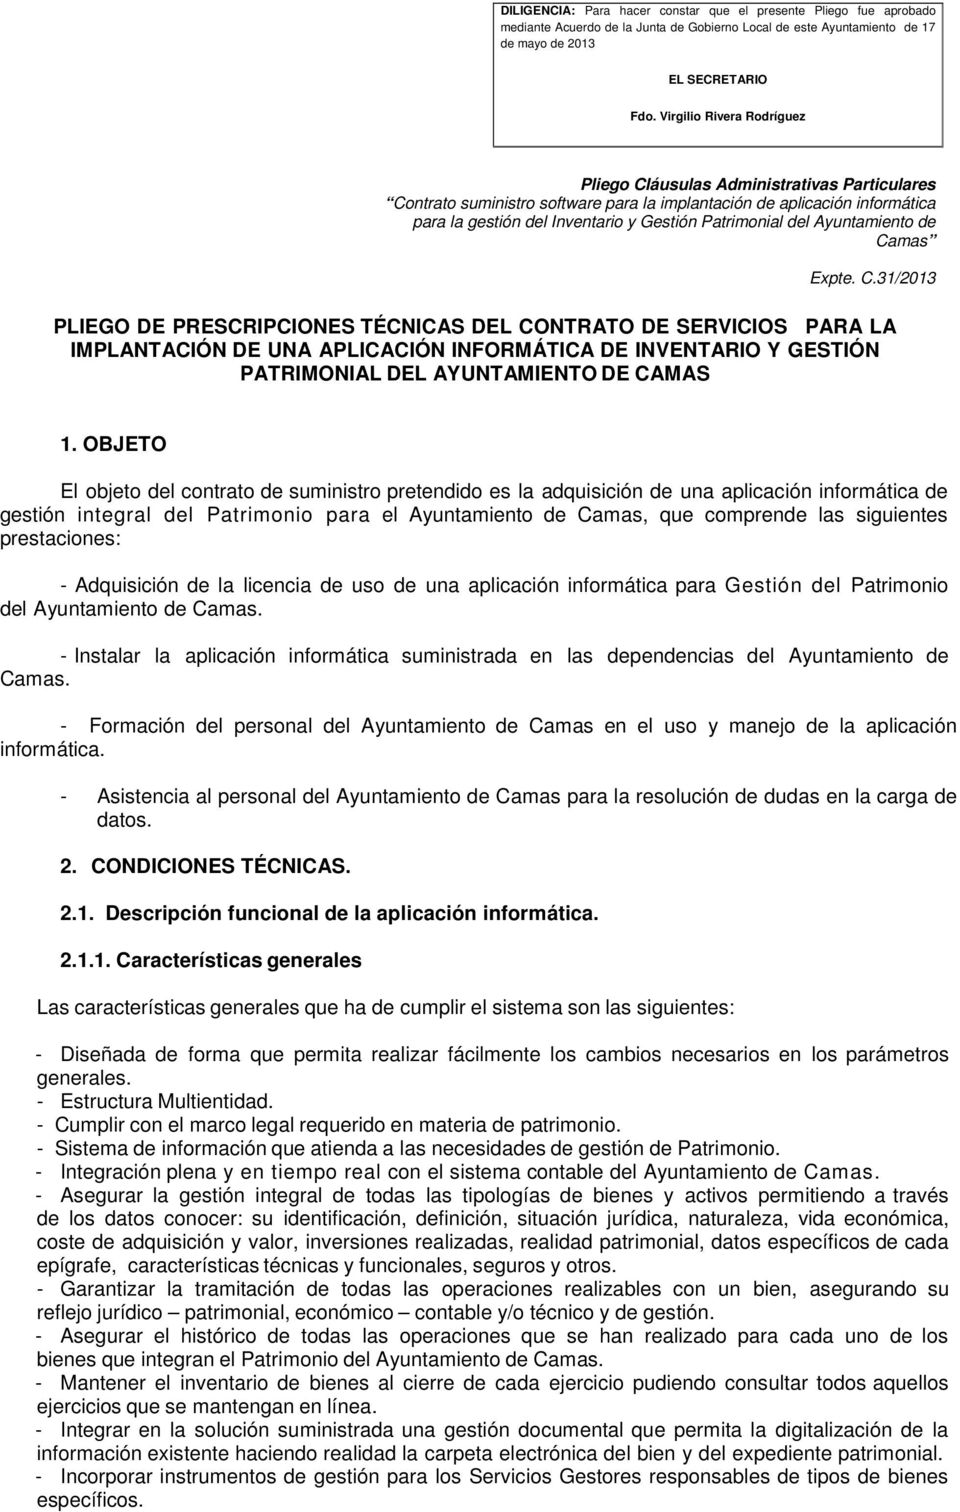 prestaciones: - Adquisición de la licencia de uso de una aplicación informática para Gestión del Patrimonio del Ayuntamiento de Camas.